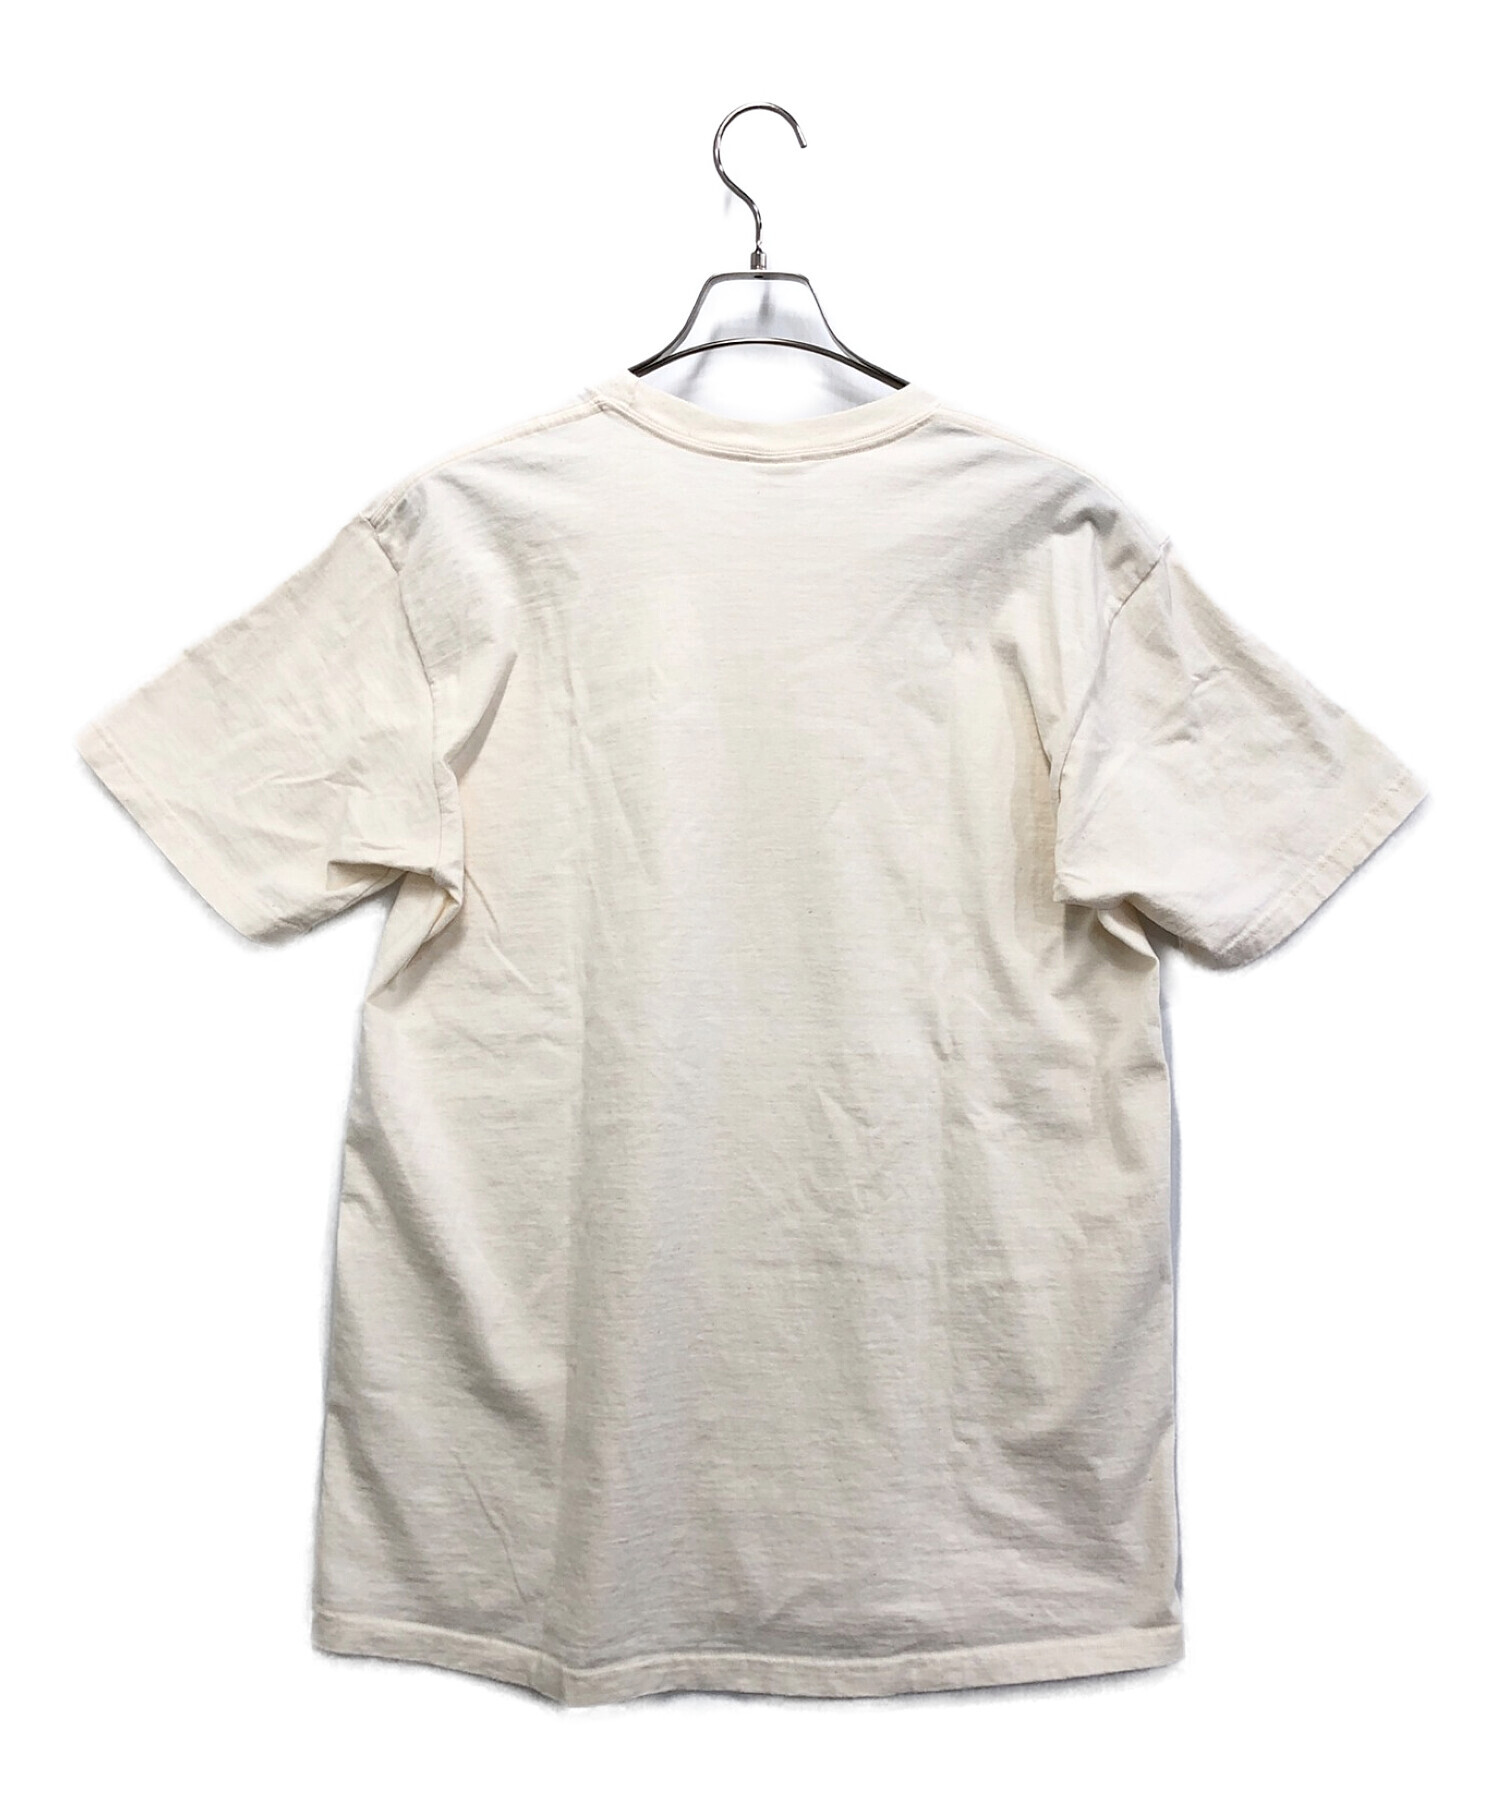 SUPREME (シュプリーム) クロスボックスロゴtシャツ ホワイト サイズ:Ｌ